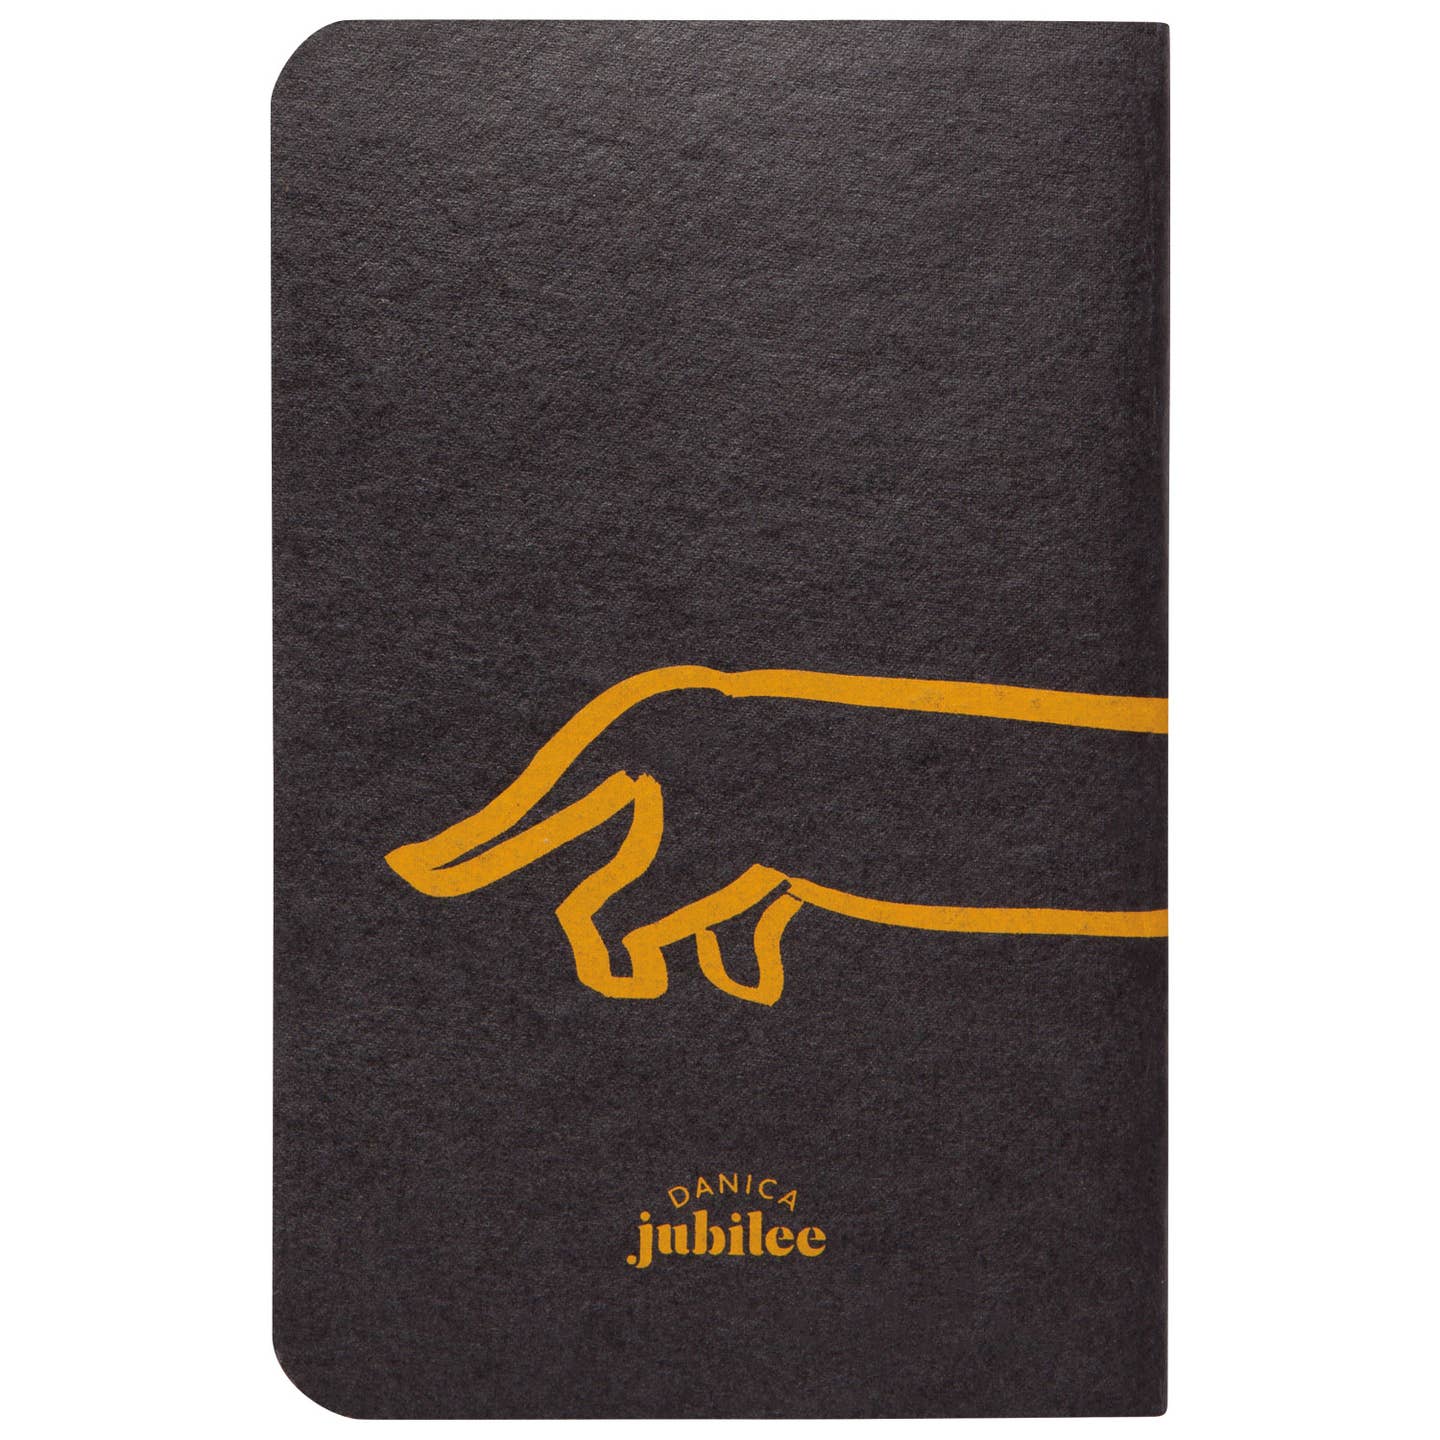 Dog Park Pocket Notebooks - Set of 2